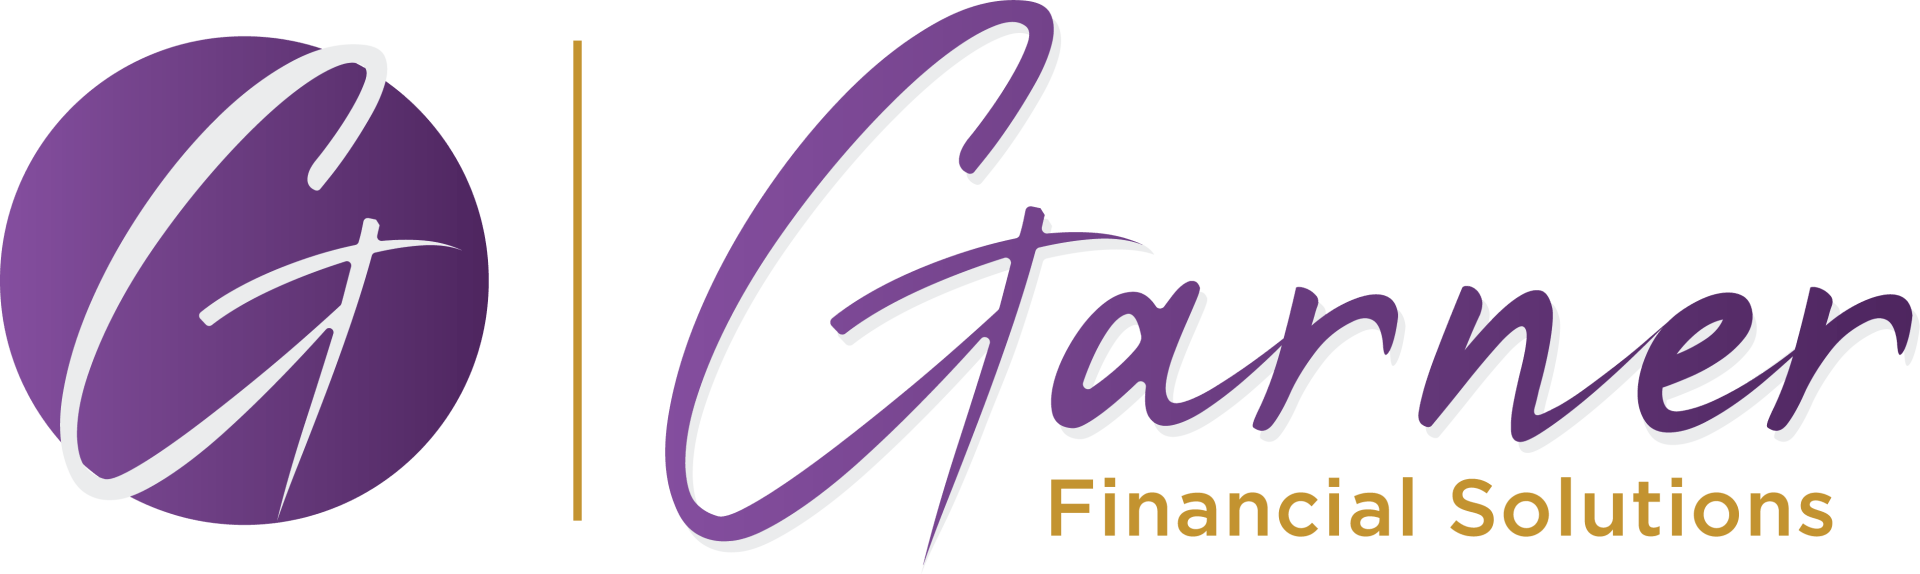 Garner Financial Solutions